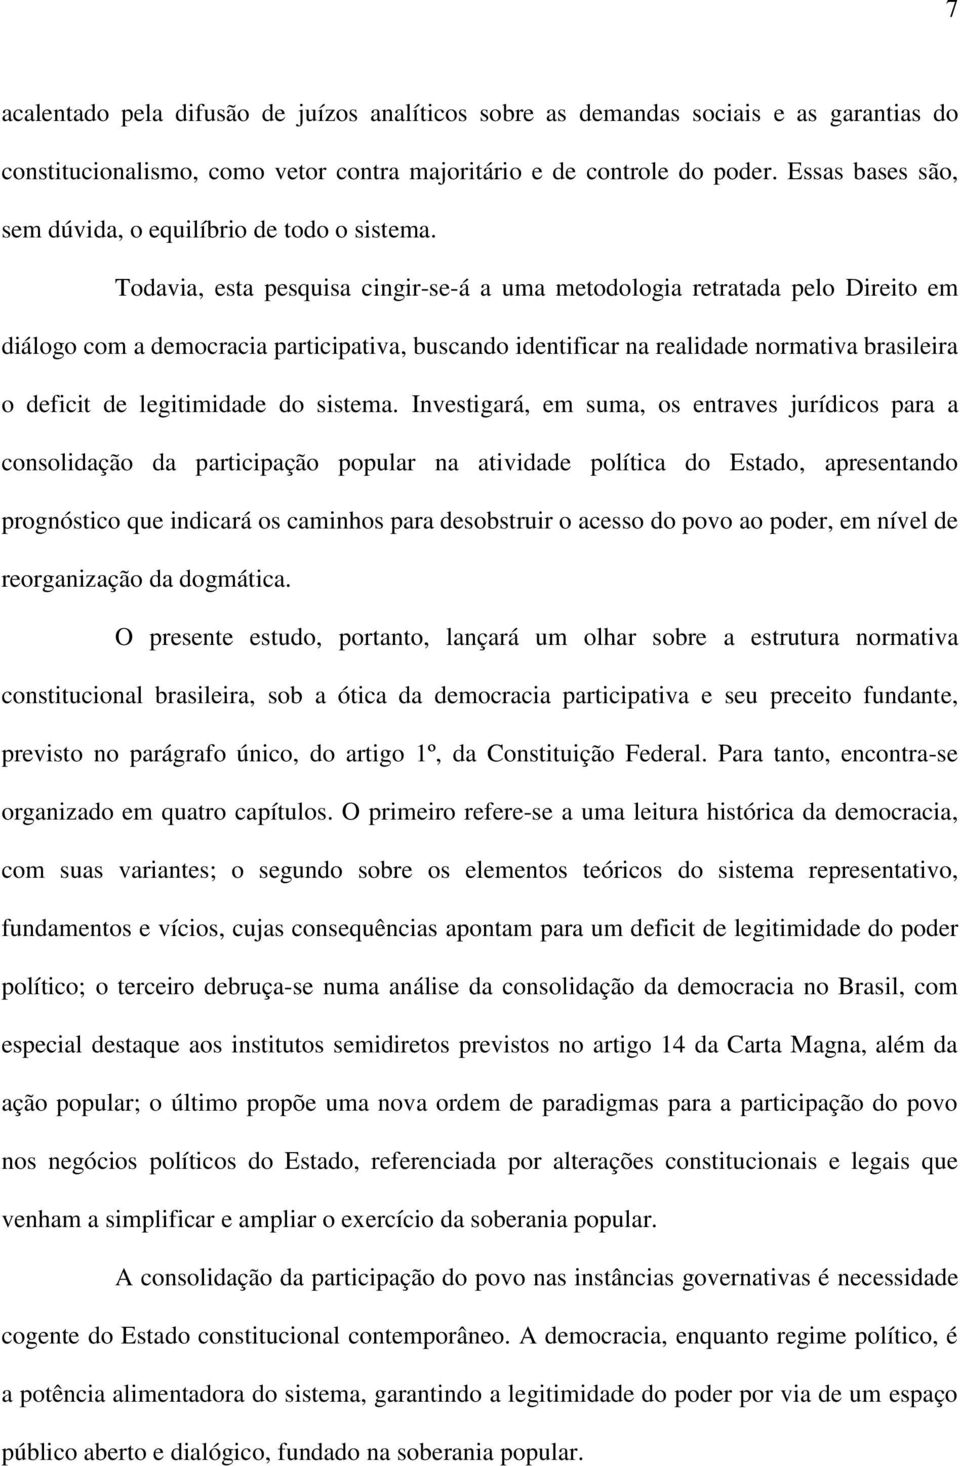 Todavia, esta pesquisa cingir-se-á a uma metodologia retratada pelo Direito em diálogo com a democracia participativa, buscando identificar na realidade normativa brasileira o deficit de legitimidade